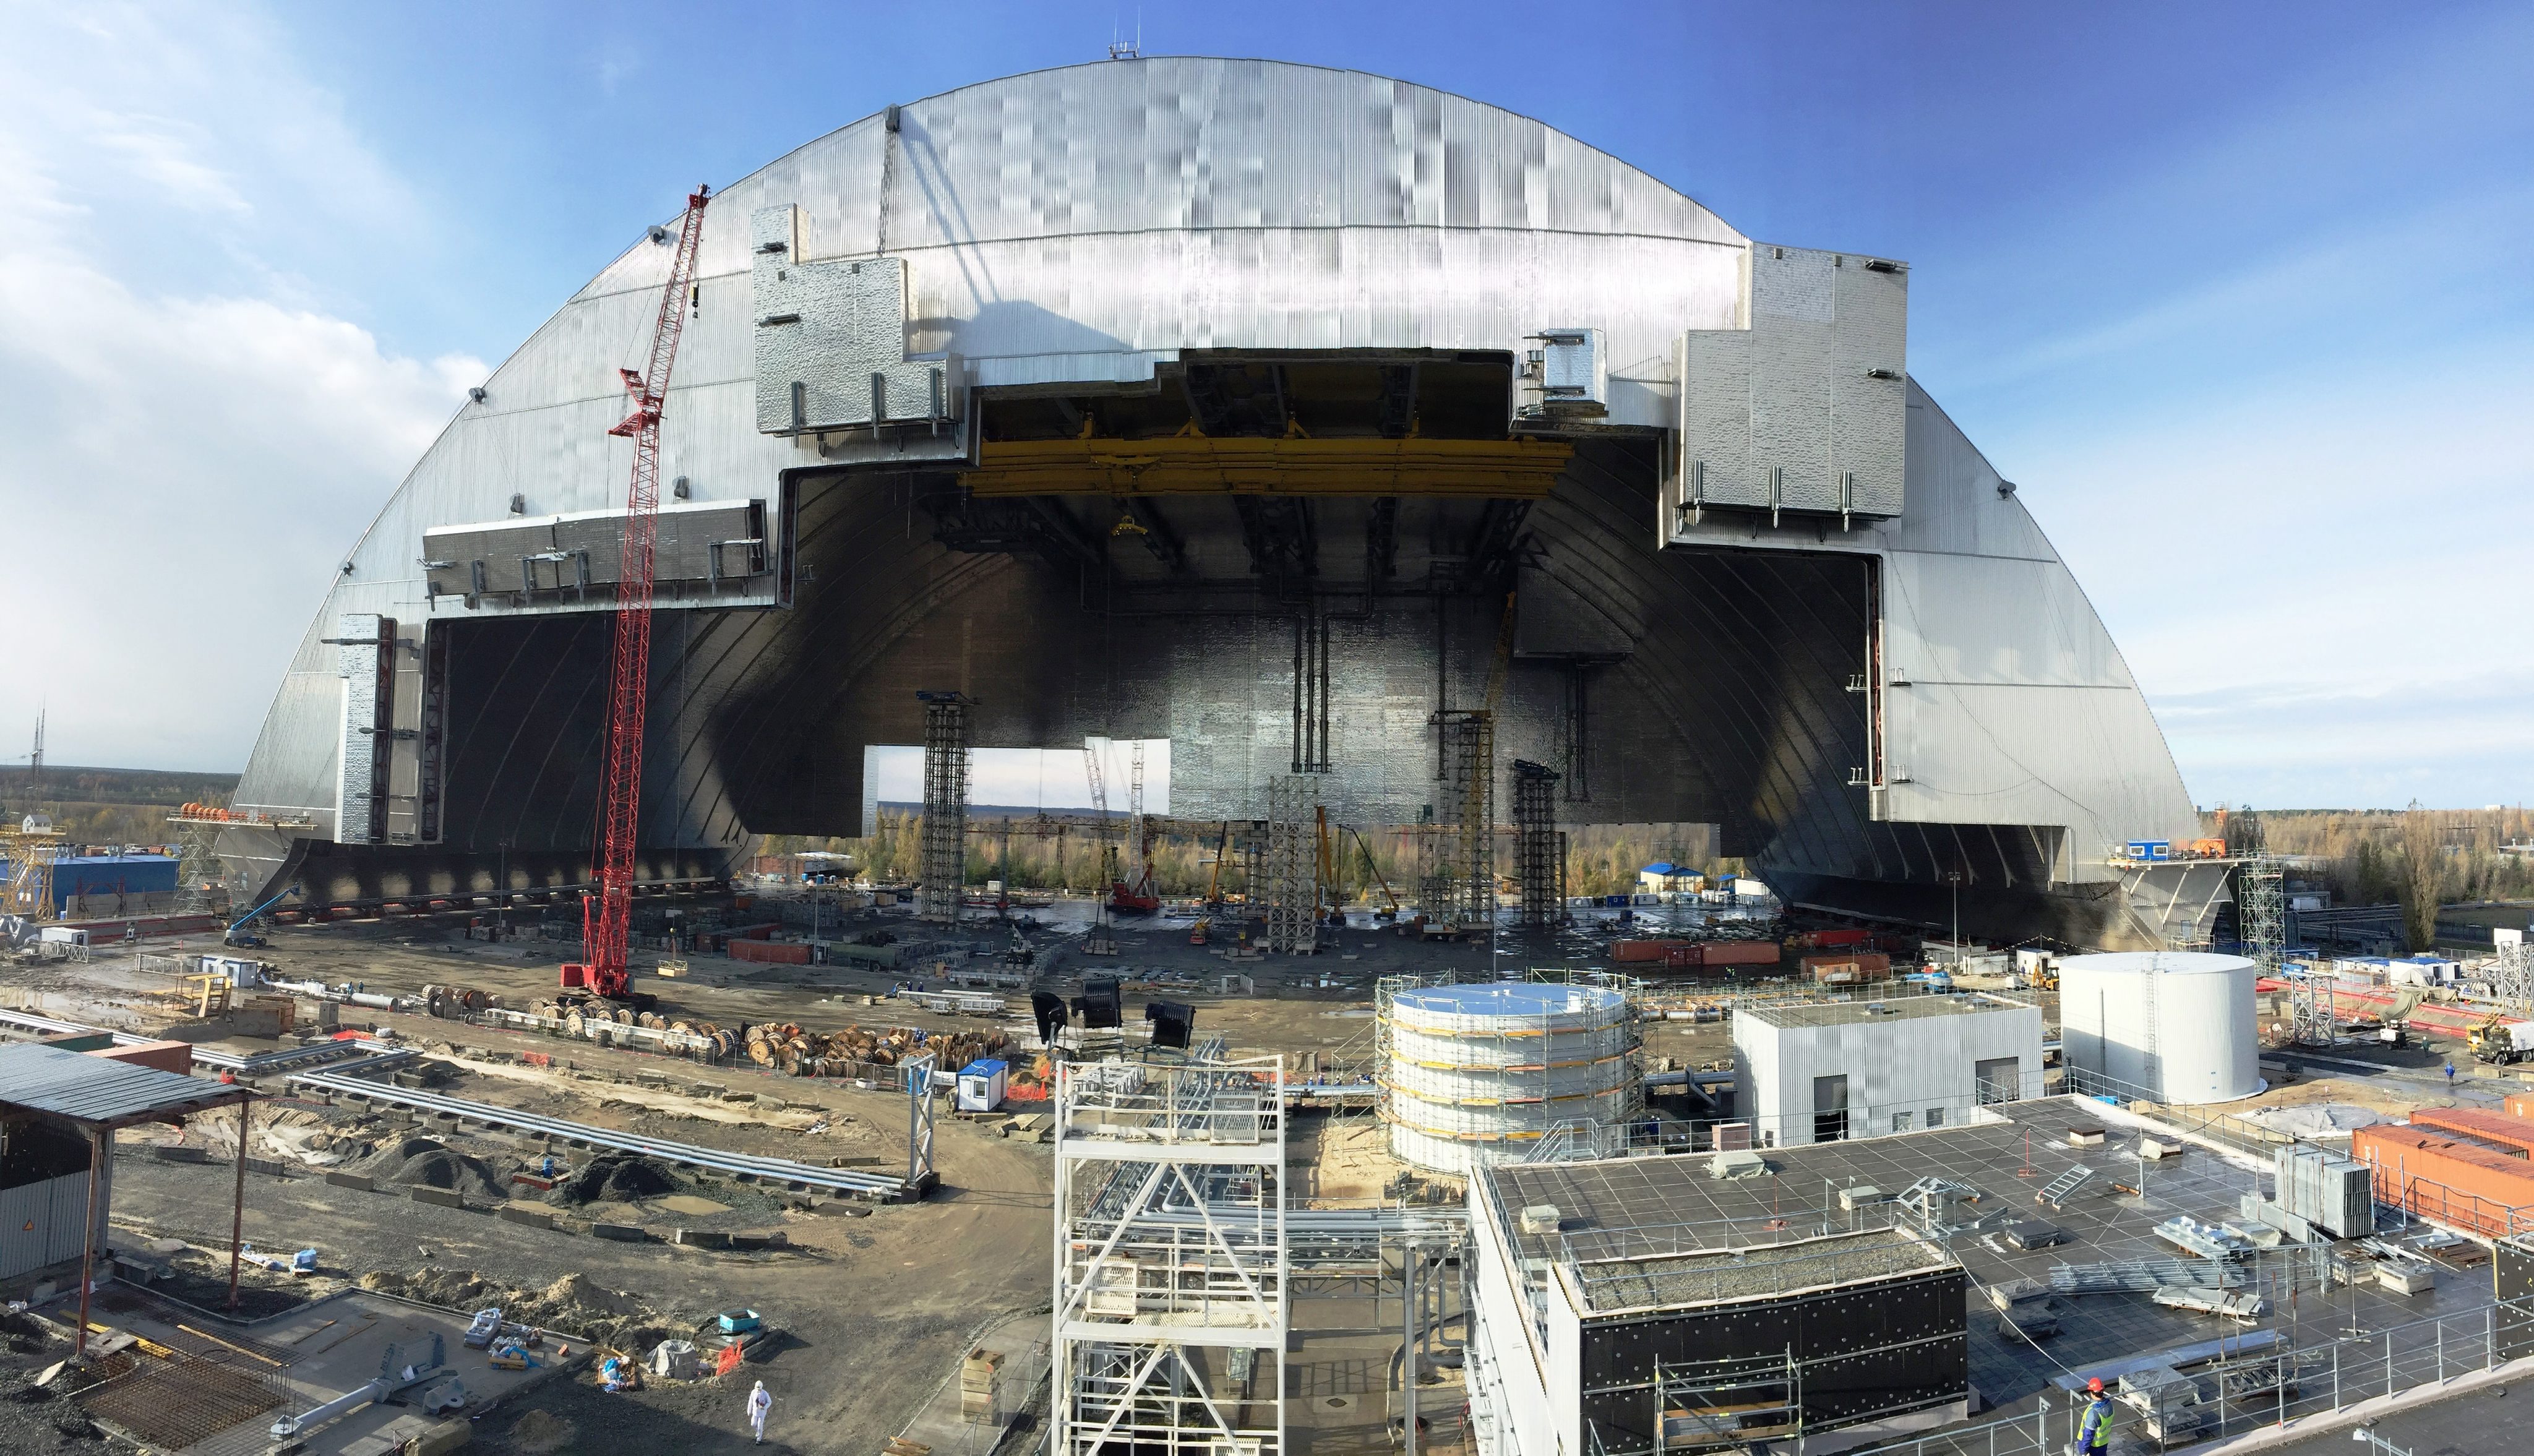 Een enorm omhulsel van roestvrij staal en beton krijgt dinsdag zijn definitieve plaats over de kerncentrale van Tsjernobyl. Het gevaarte van 165 meter lang, 260 meter breed en 110 meter hoog ziet eruit als een megagrote vliegtuighangar en zou gemakkelijk de Parijse kathedraal Notre Dame kunnen herbergen.